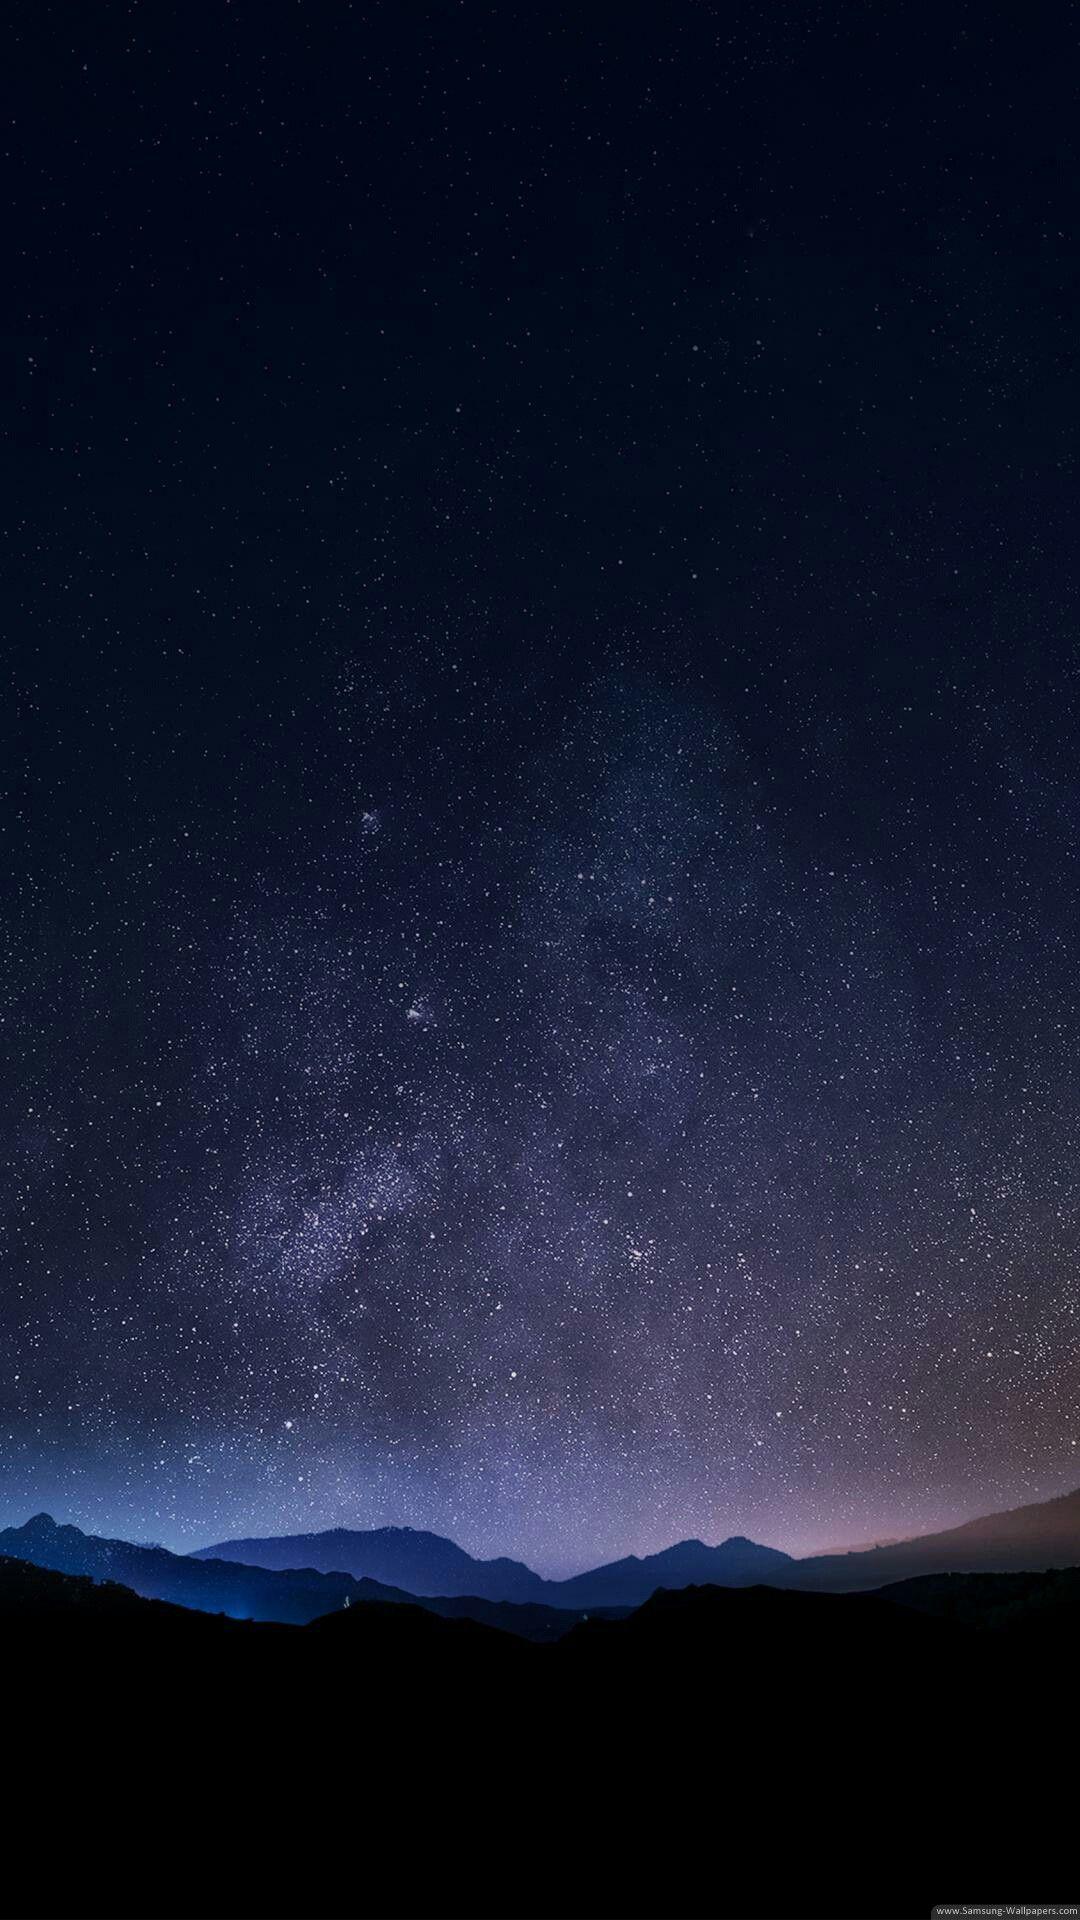 Nexus 6P wallpaperDownload free stunning full HD background